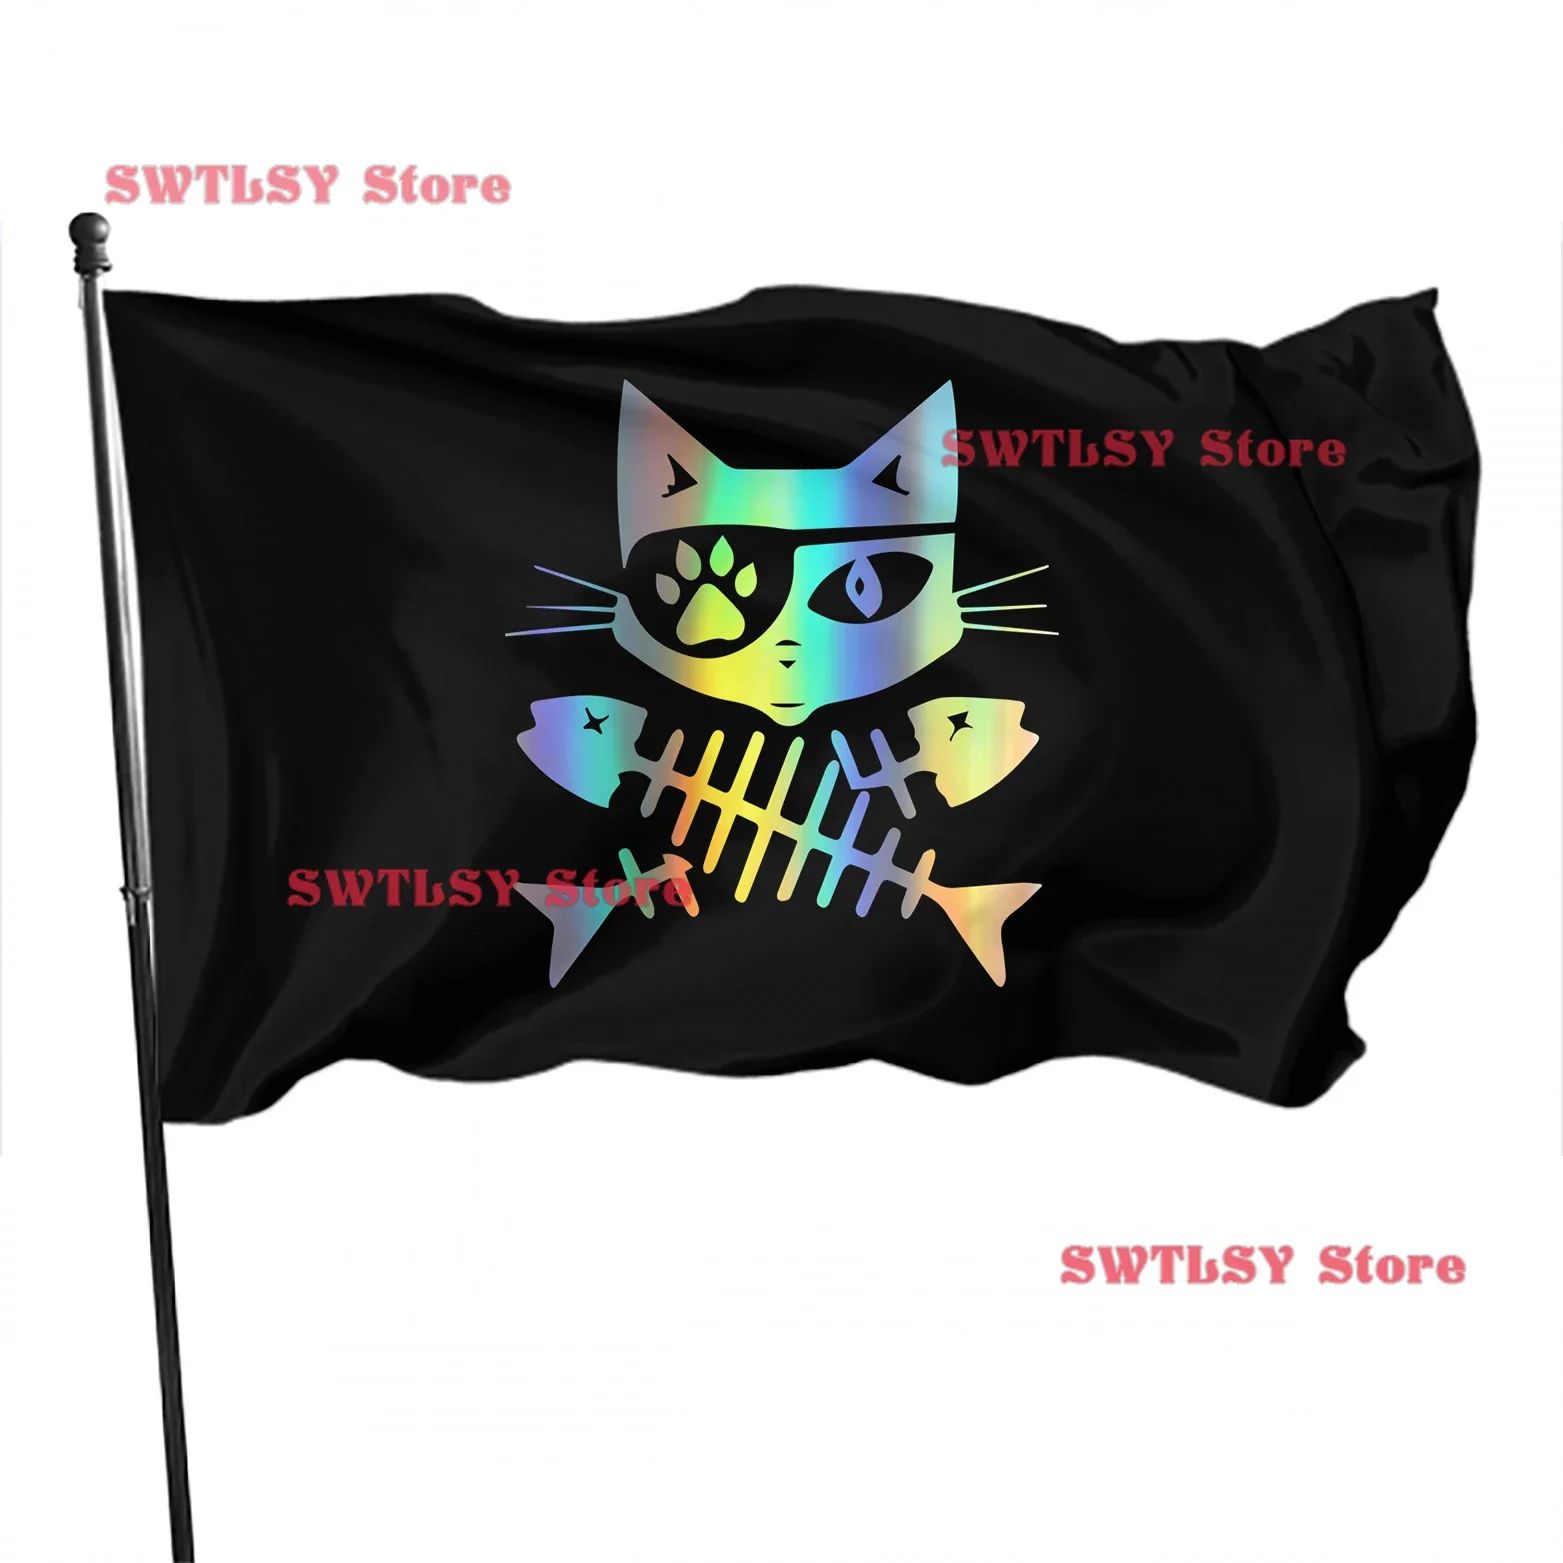 Цвет: Пиратская Кошка 4Size: 120 x 180см